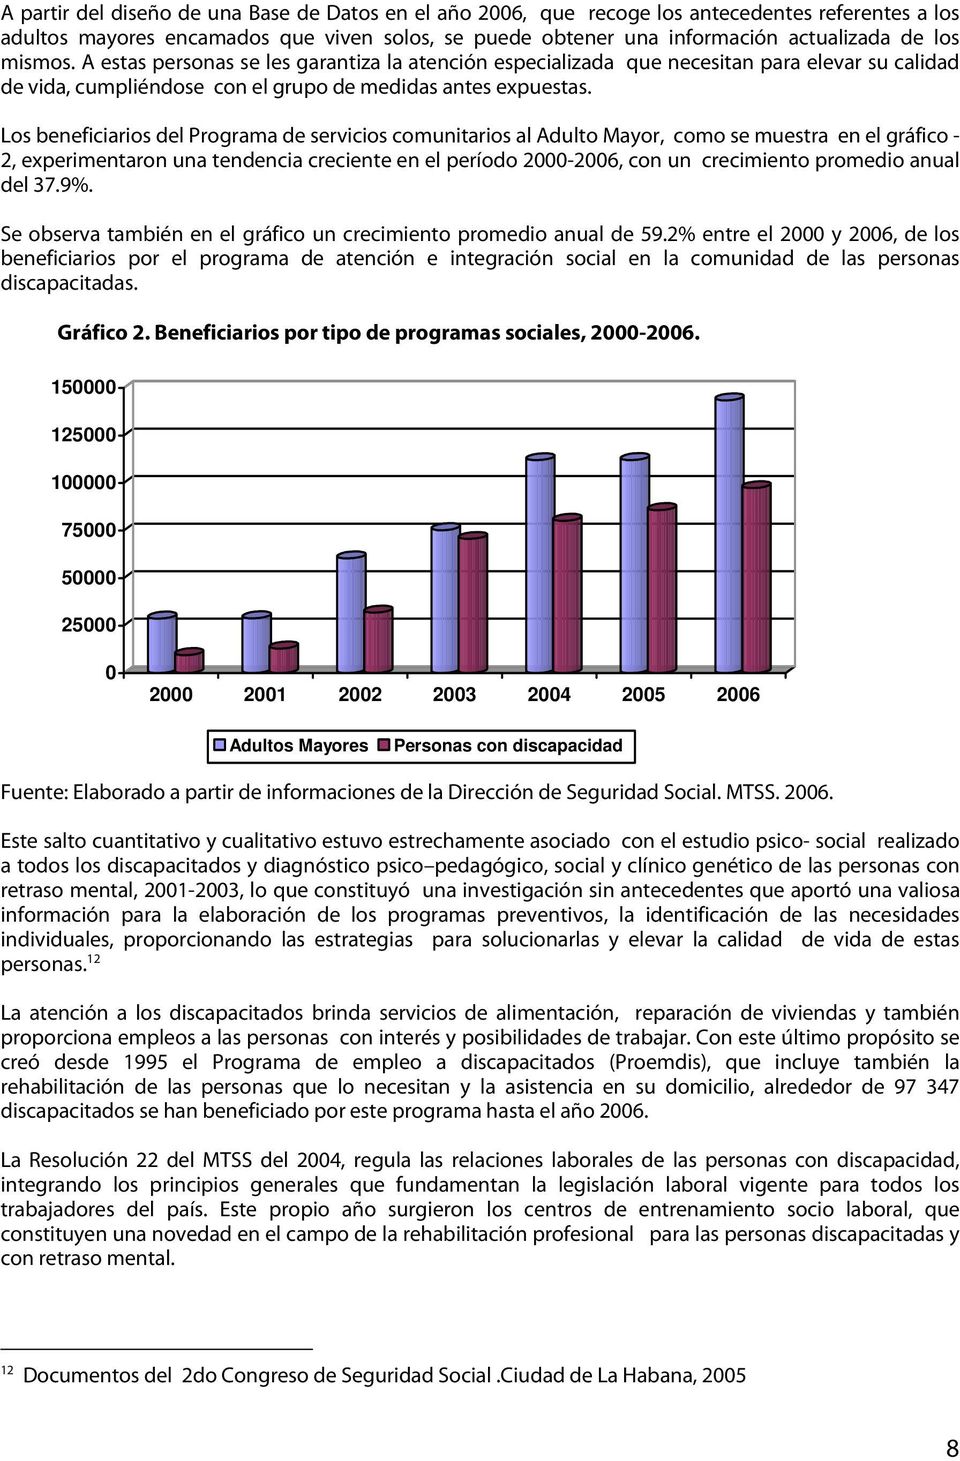 Los beneficiarios del Programa de servicios comunitarios al Adulto Mayor, como se muestra en el gráfico - 2, experimentaron una tendencia creciente en el período 2000-2006, con un crecimiento